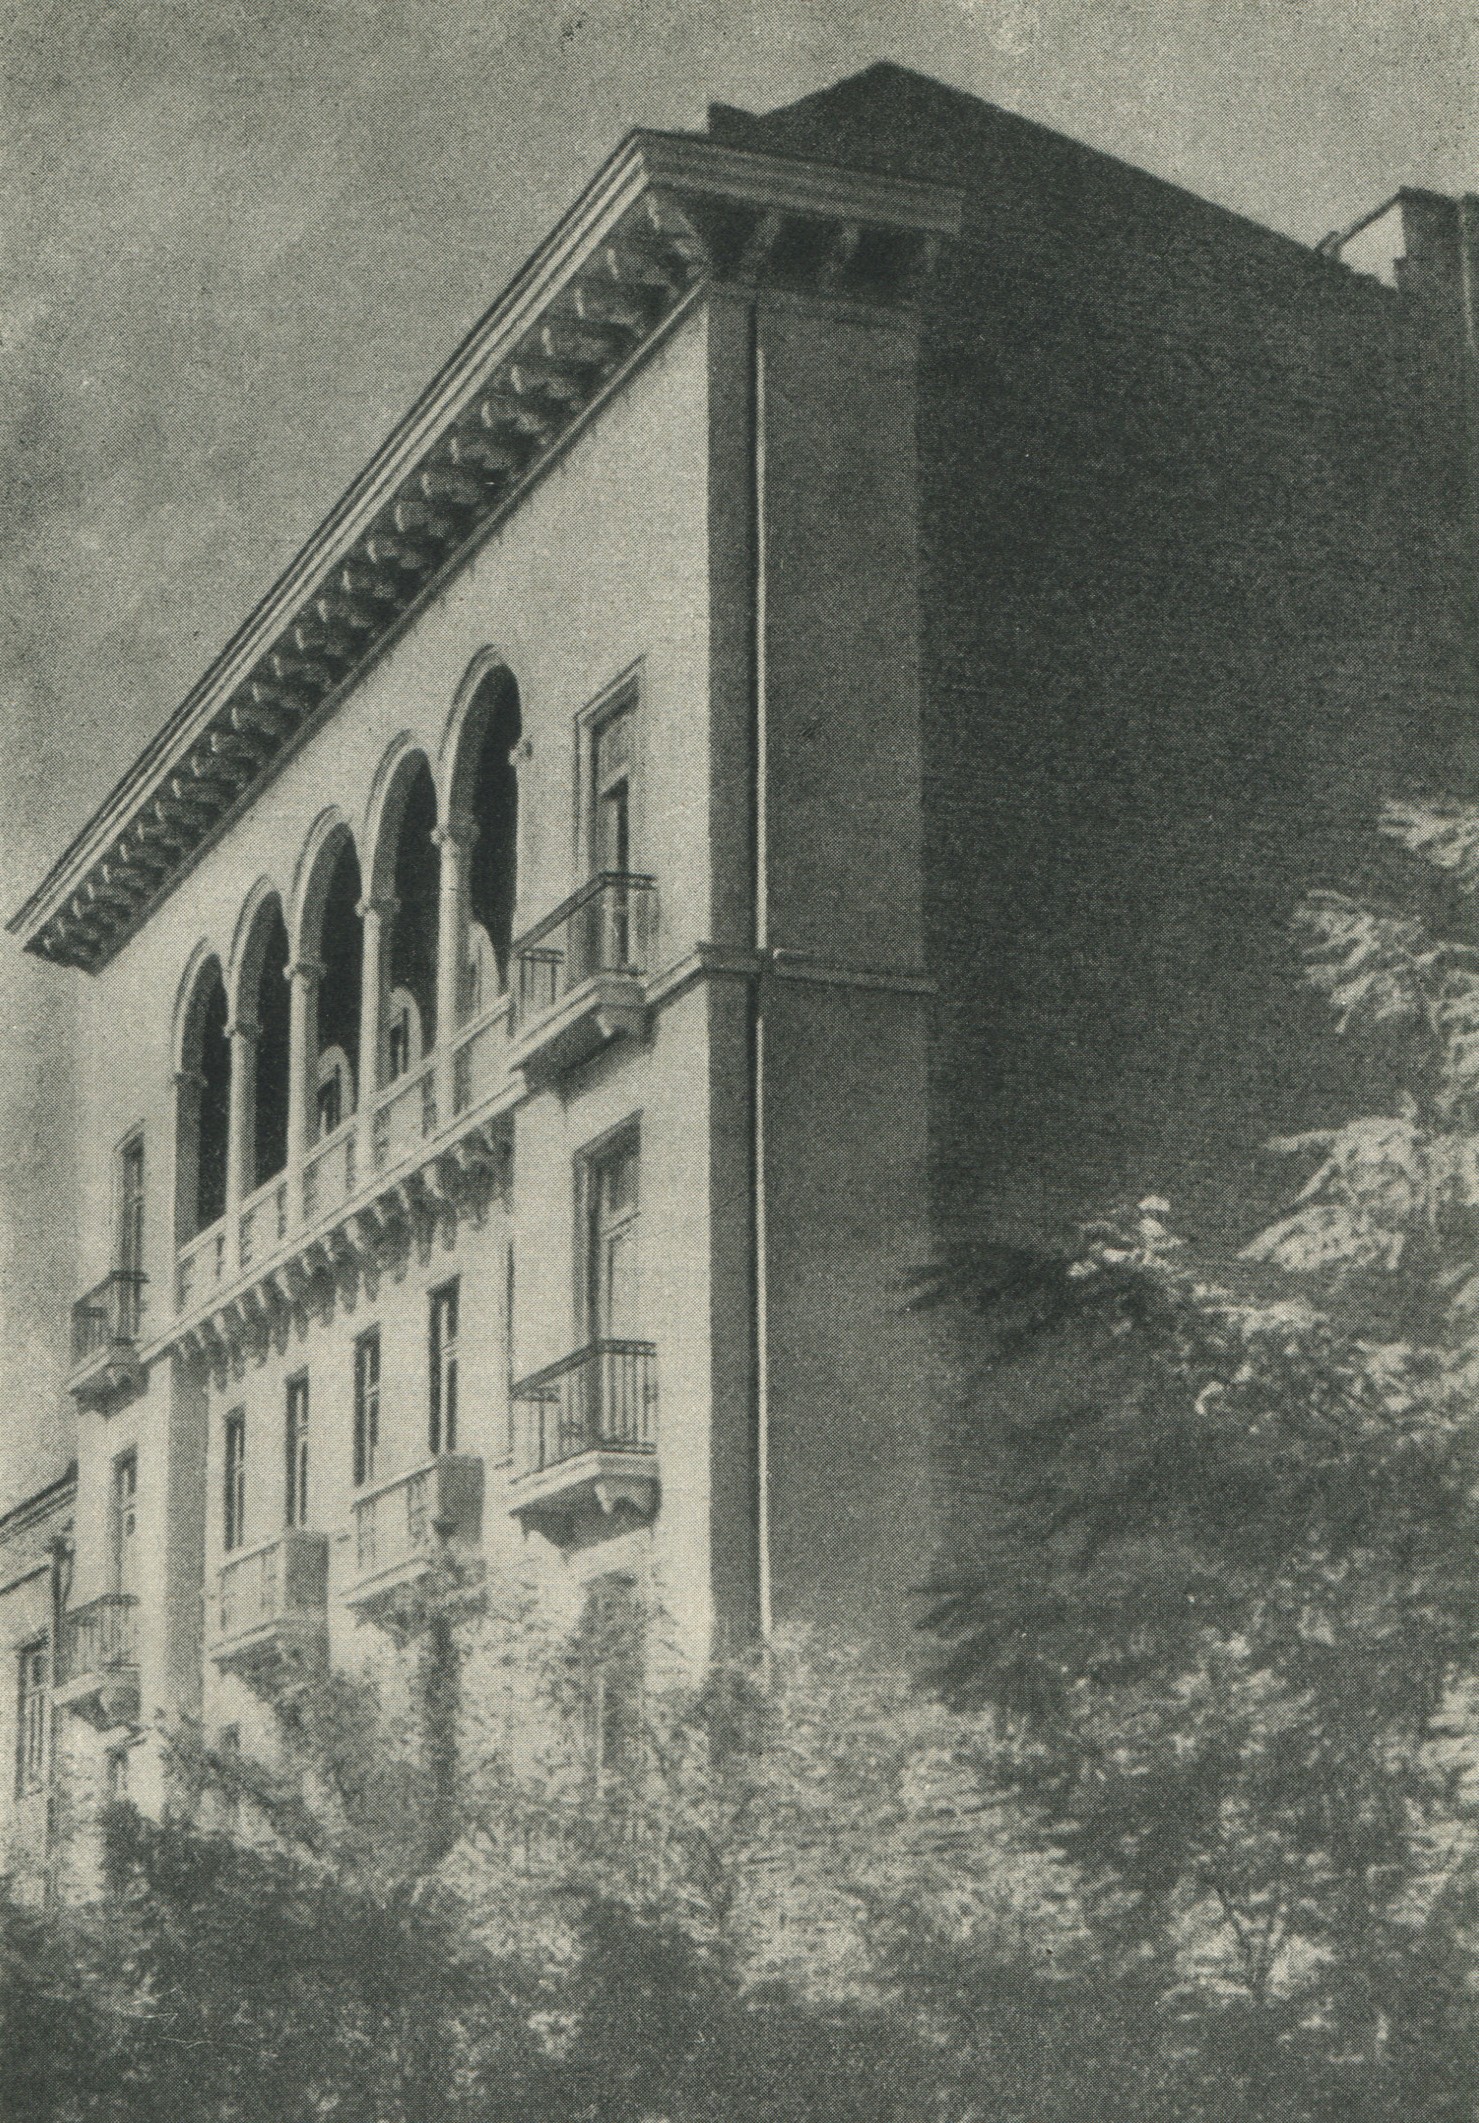 Жилой дом на улице Марти в Тбилиси. Общий вид. Арх. А. Я. Миминошвили. 1949